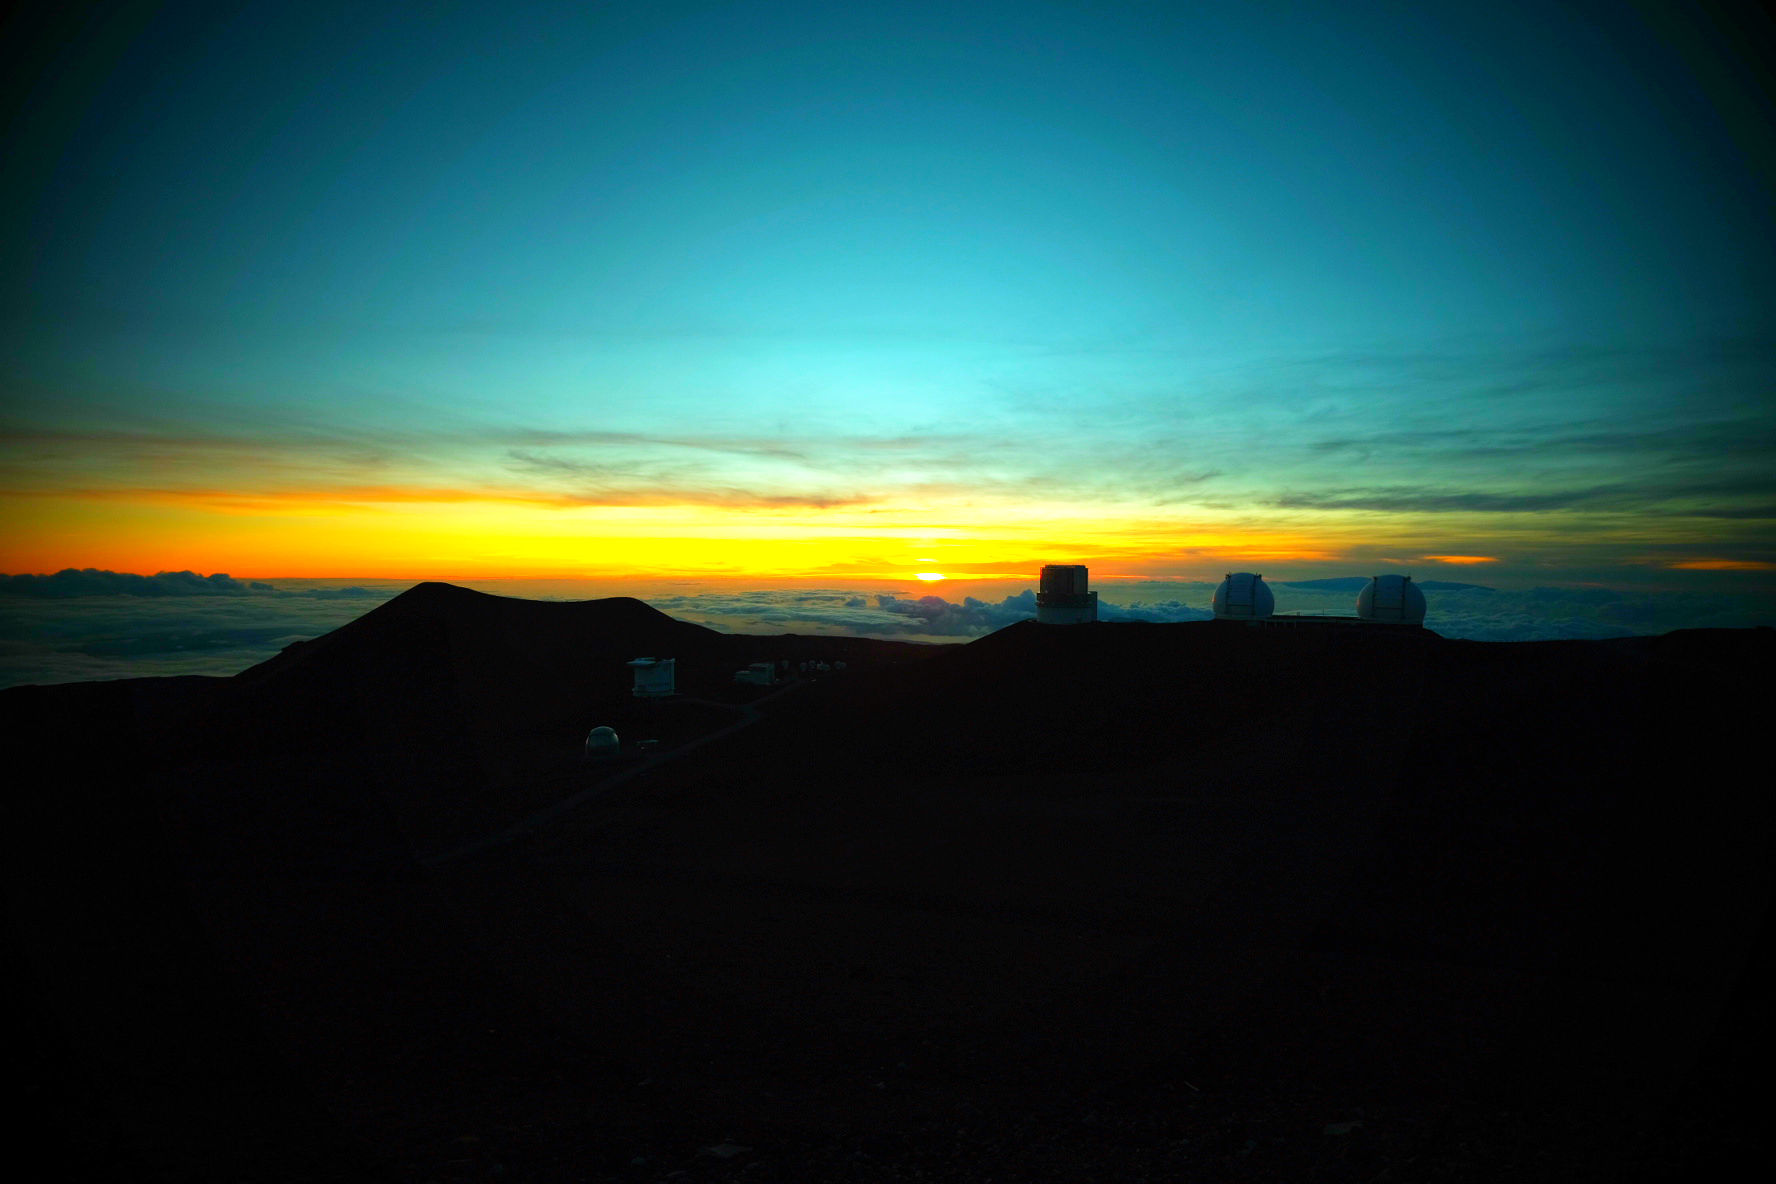 マウナケア山頂から雲海に沈む夕陽を堪能。